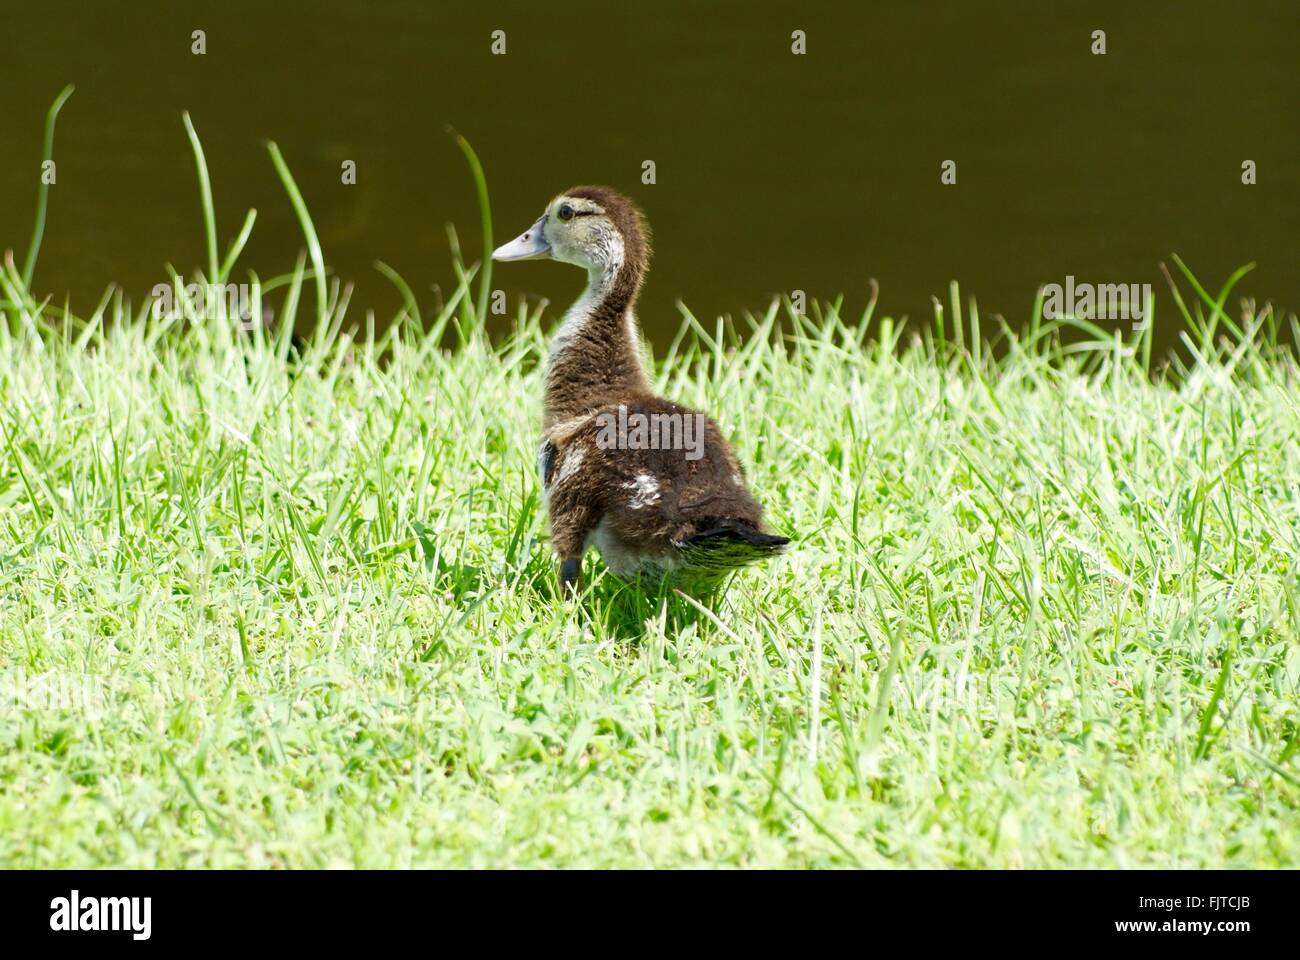 Brown patito bebé de pie en el pasto por el estanque. Foto de stock